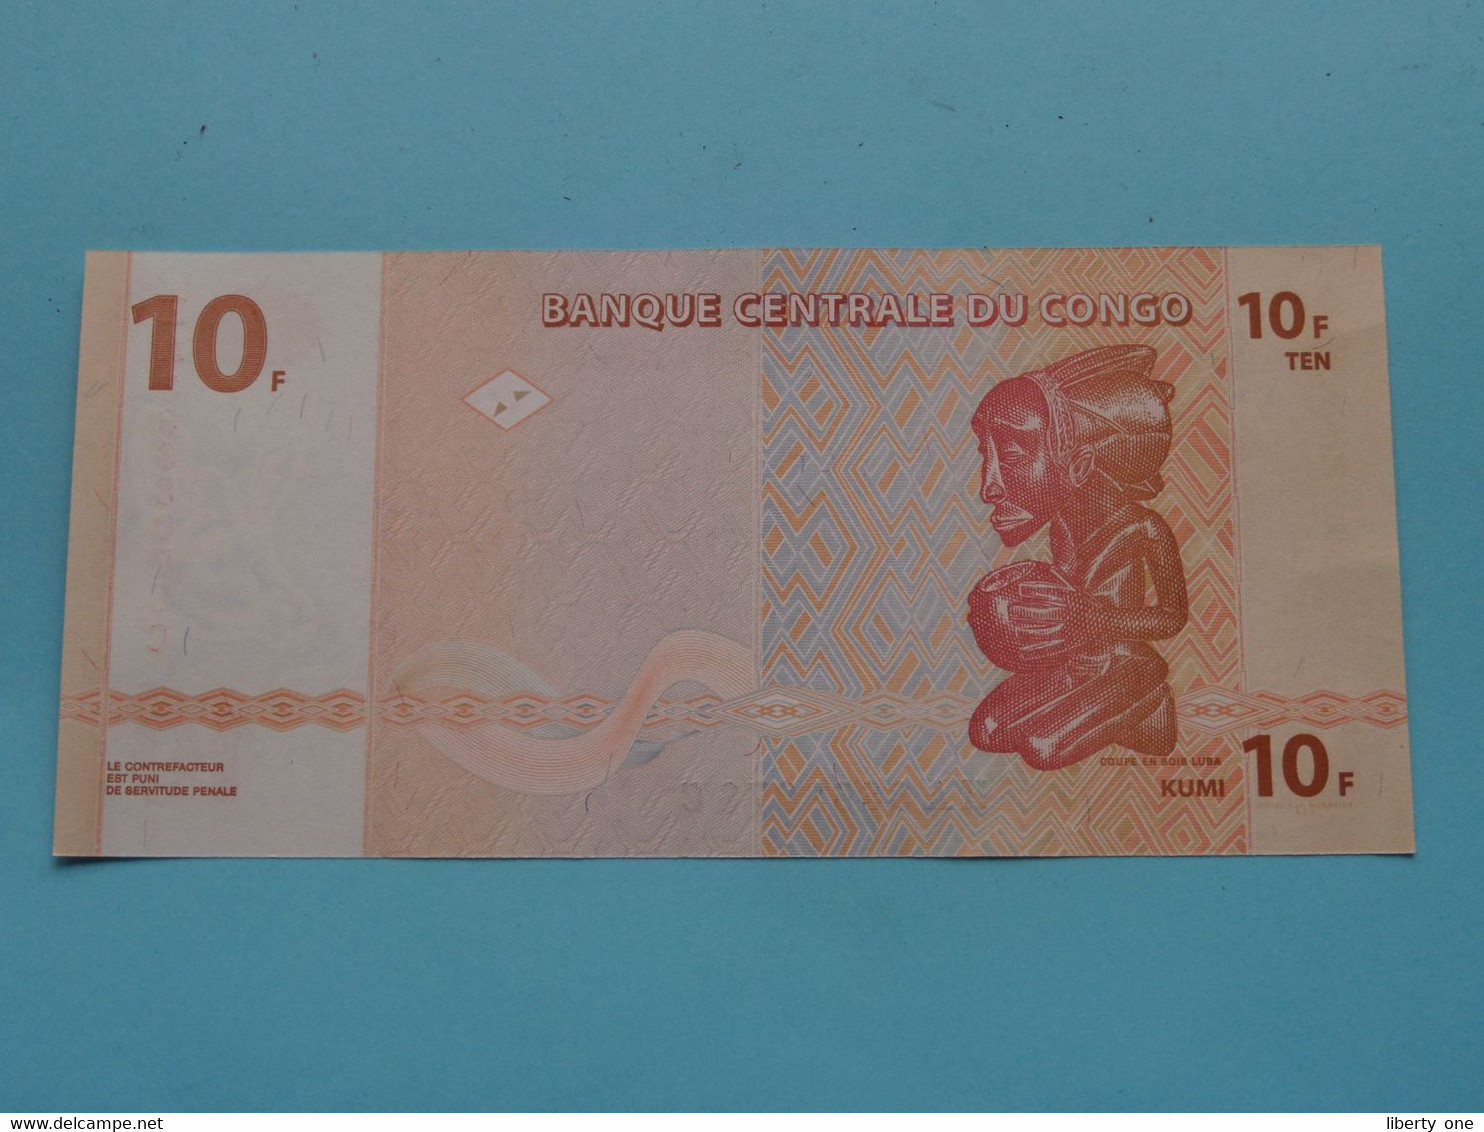 10 ( Dix ) Francs ( HA3668076C ) 2003 > Banque Centrale Du CONGO ( For Grade, Please See Photo ) UNC ! - République Du Congo (Congo-Brazzaville)